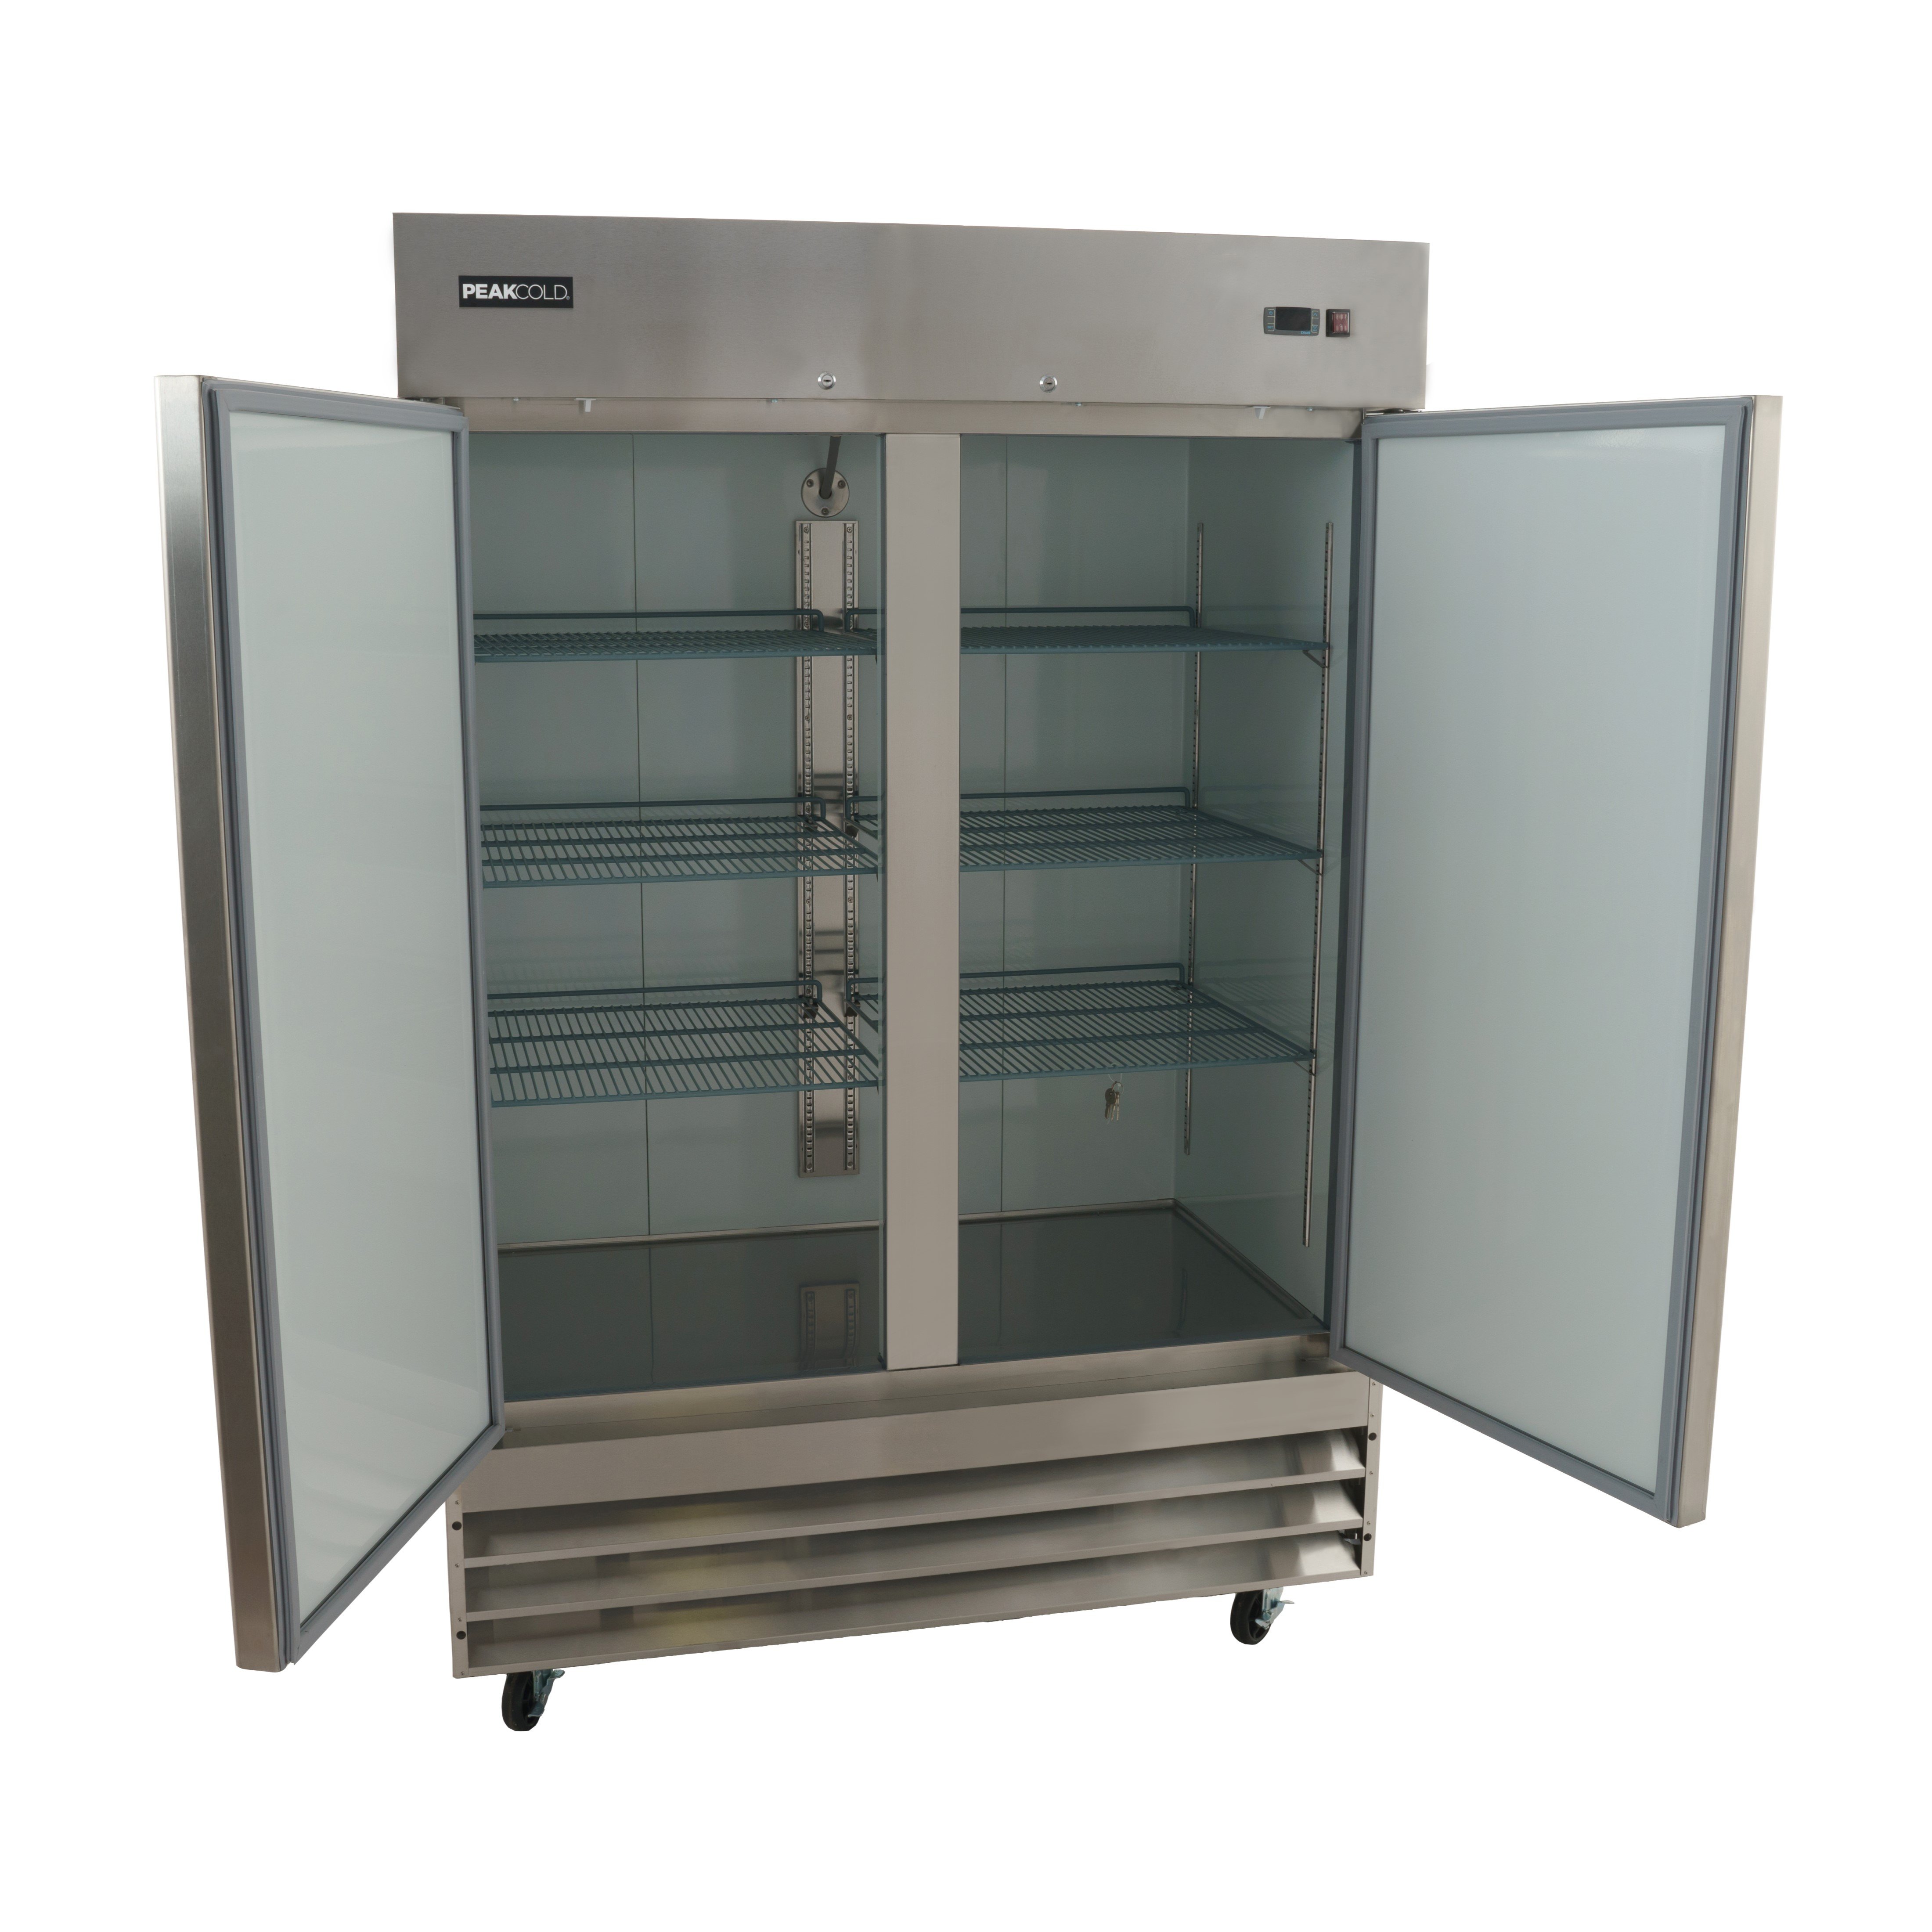 PeakCold 2-Door Stainless Steel Commercial Refrigerator